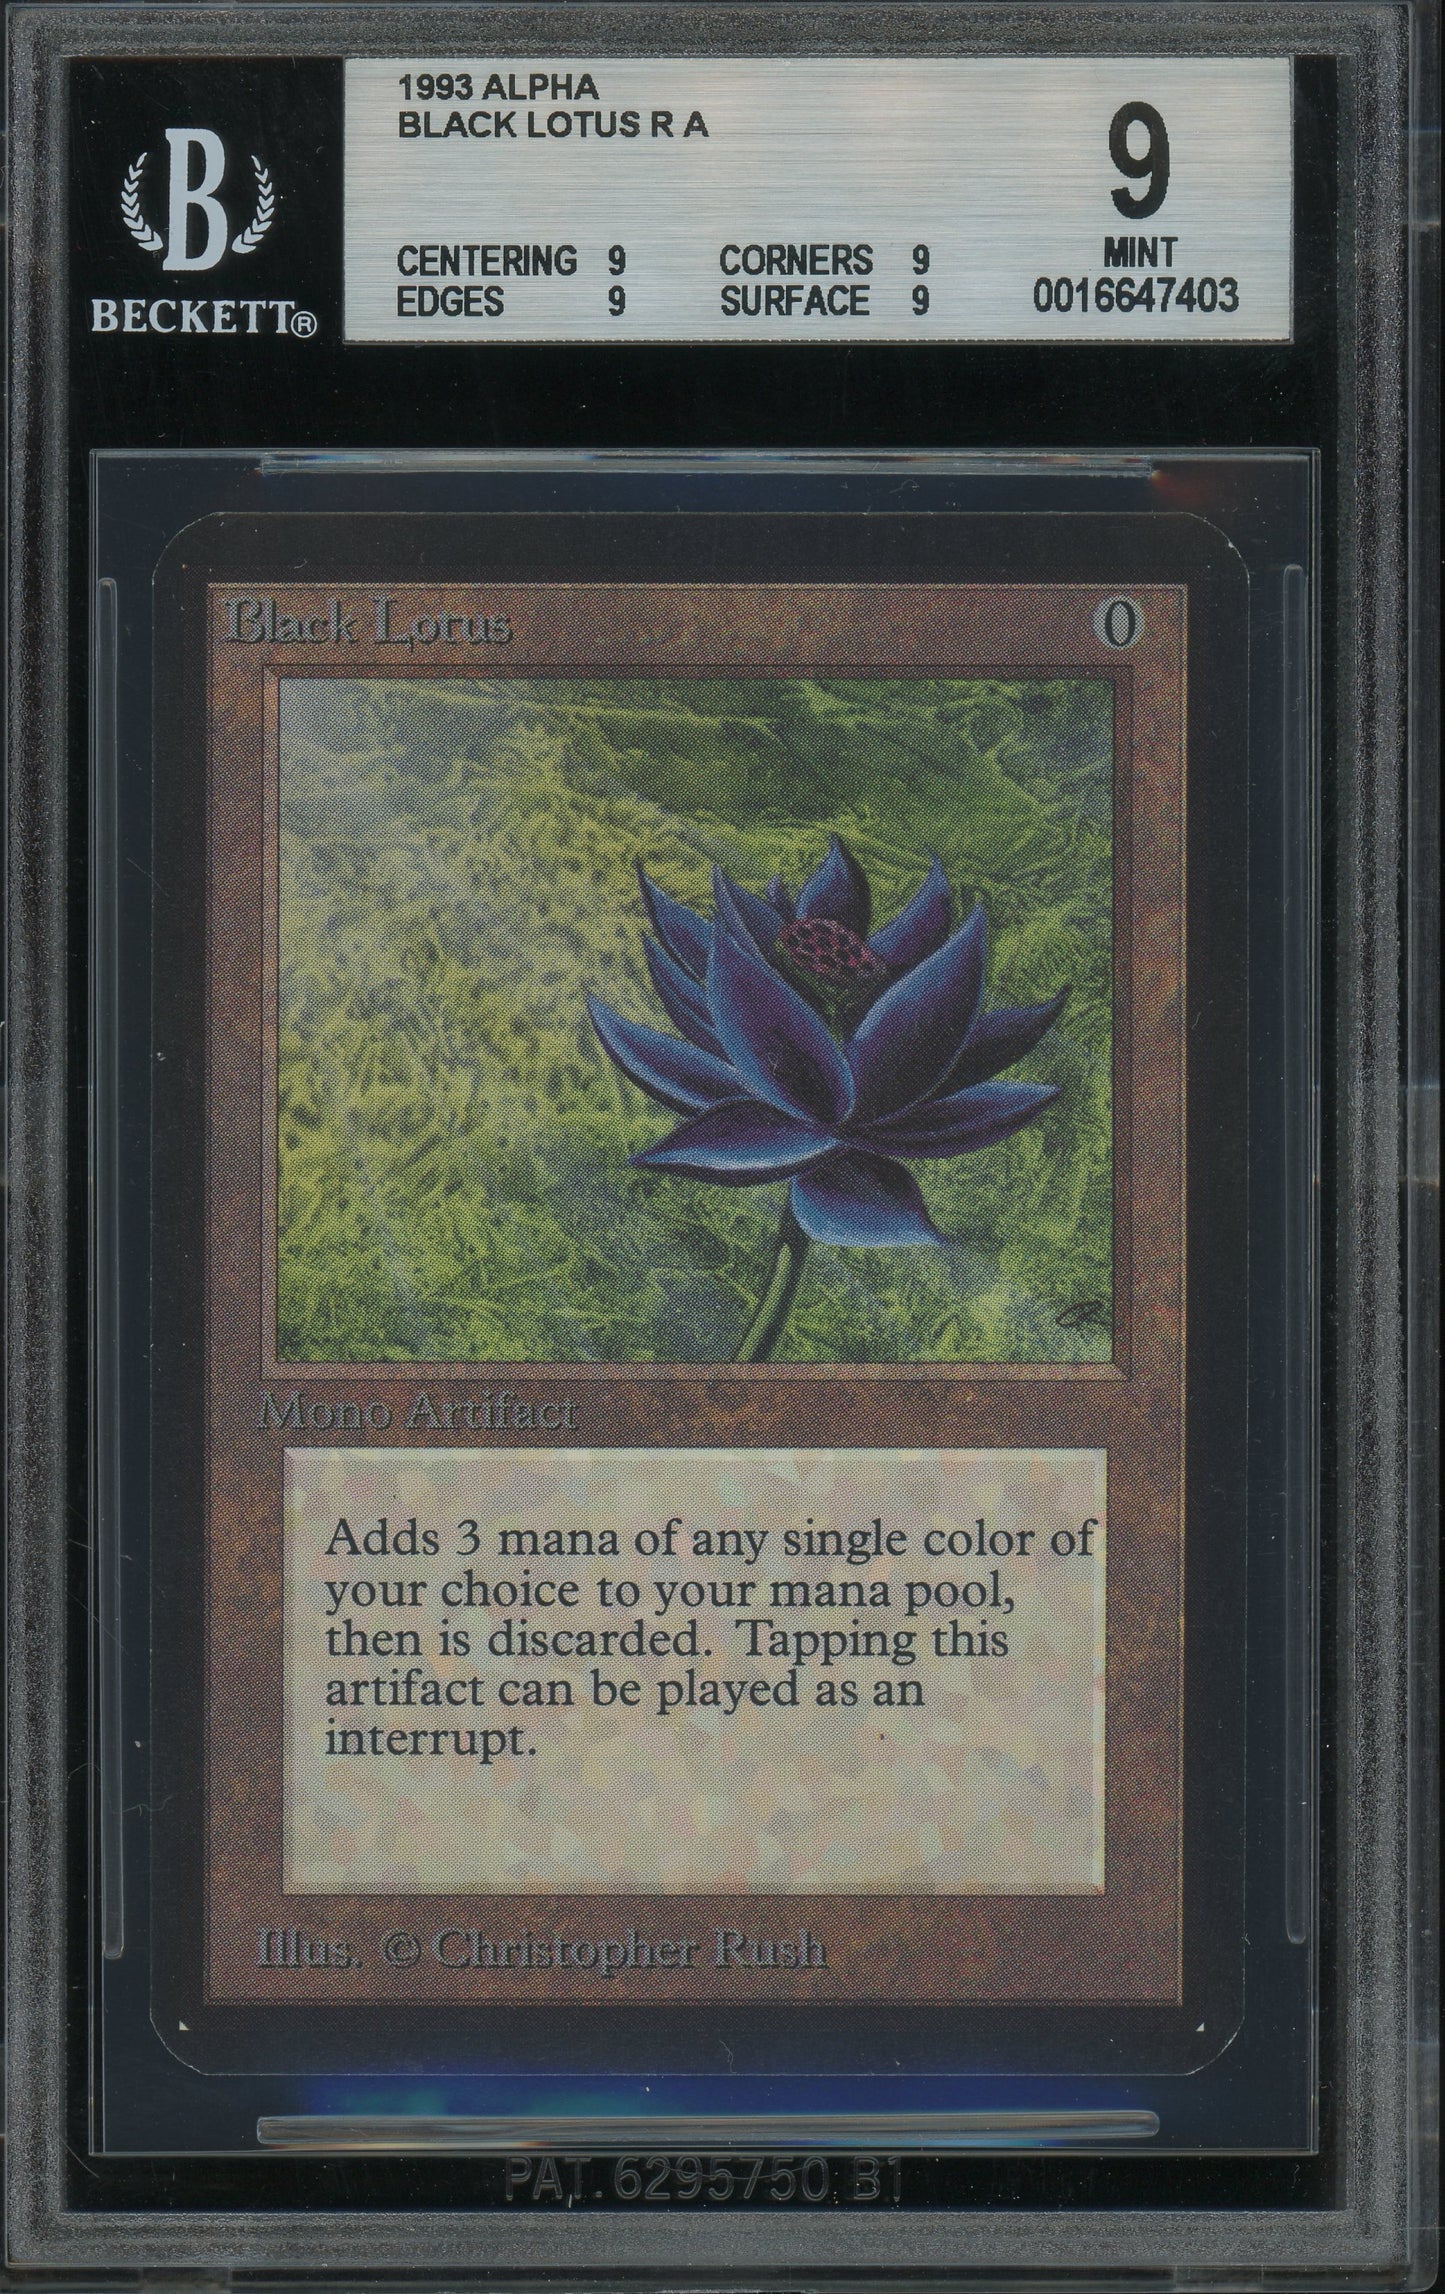 Black Lotus - Alpha BGS 9 - 16647403